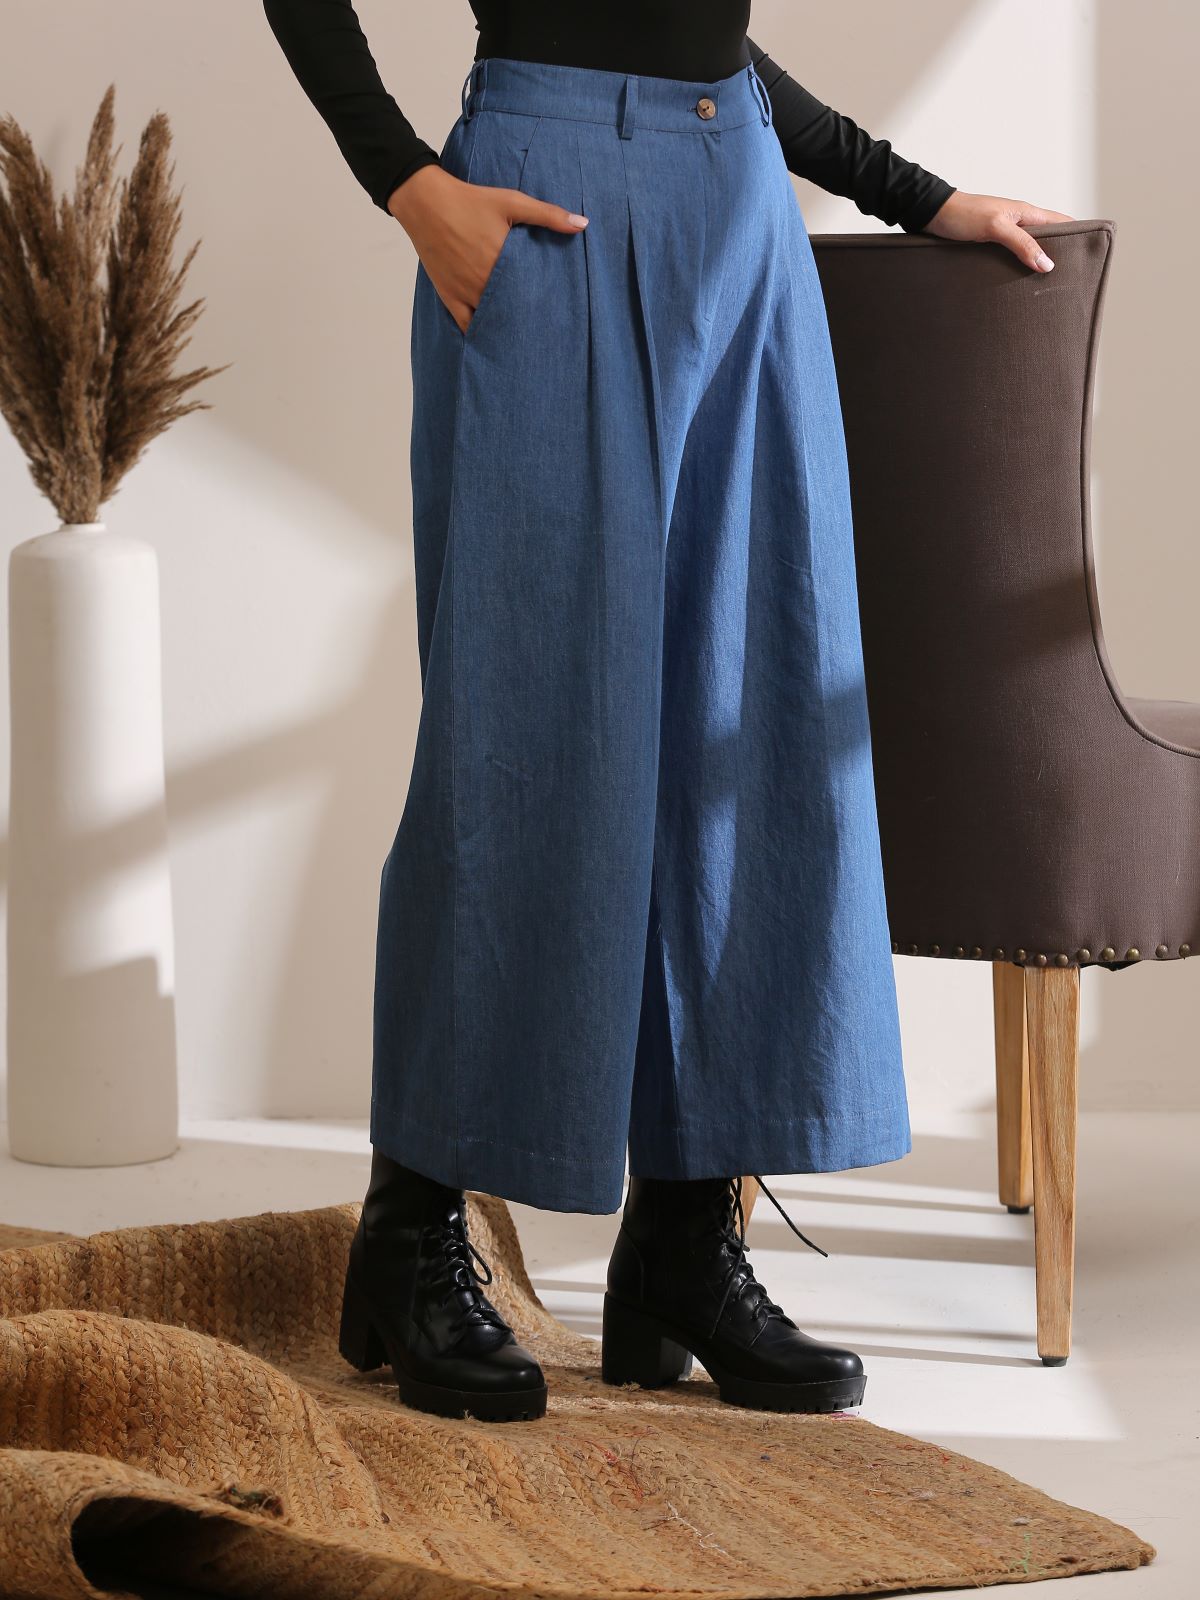 Basics - Denim trousers in light blue